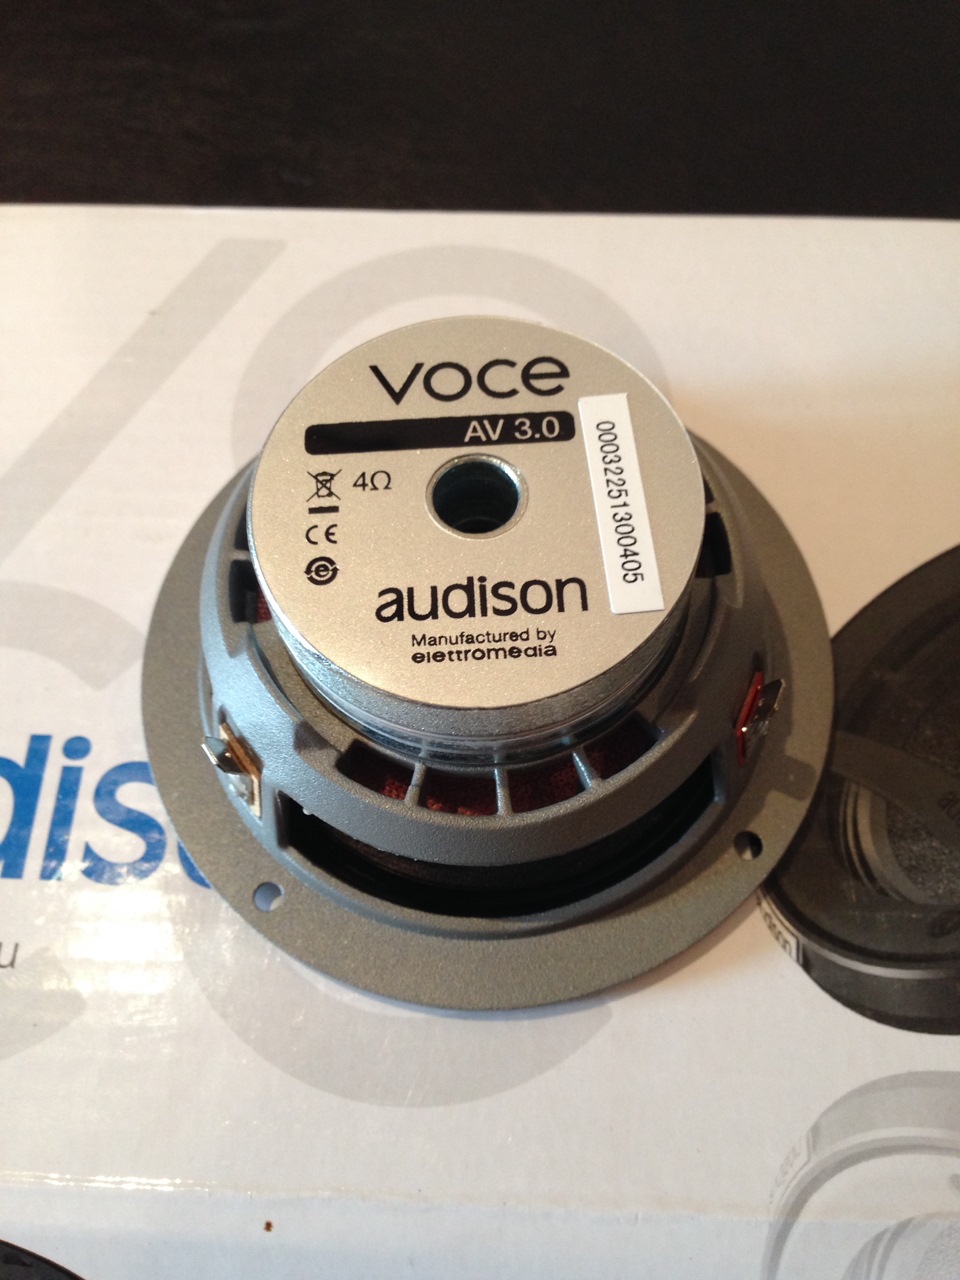 Audison av. Audison voce av 3.0. Audison voce av 1.1. Audison voce av 6.5. Audison voce Subwoofer av 10 гриль.